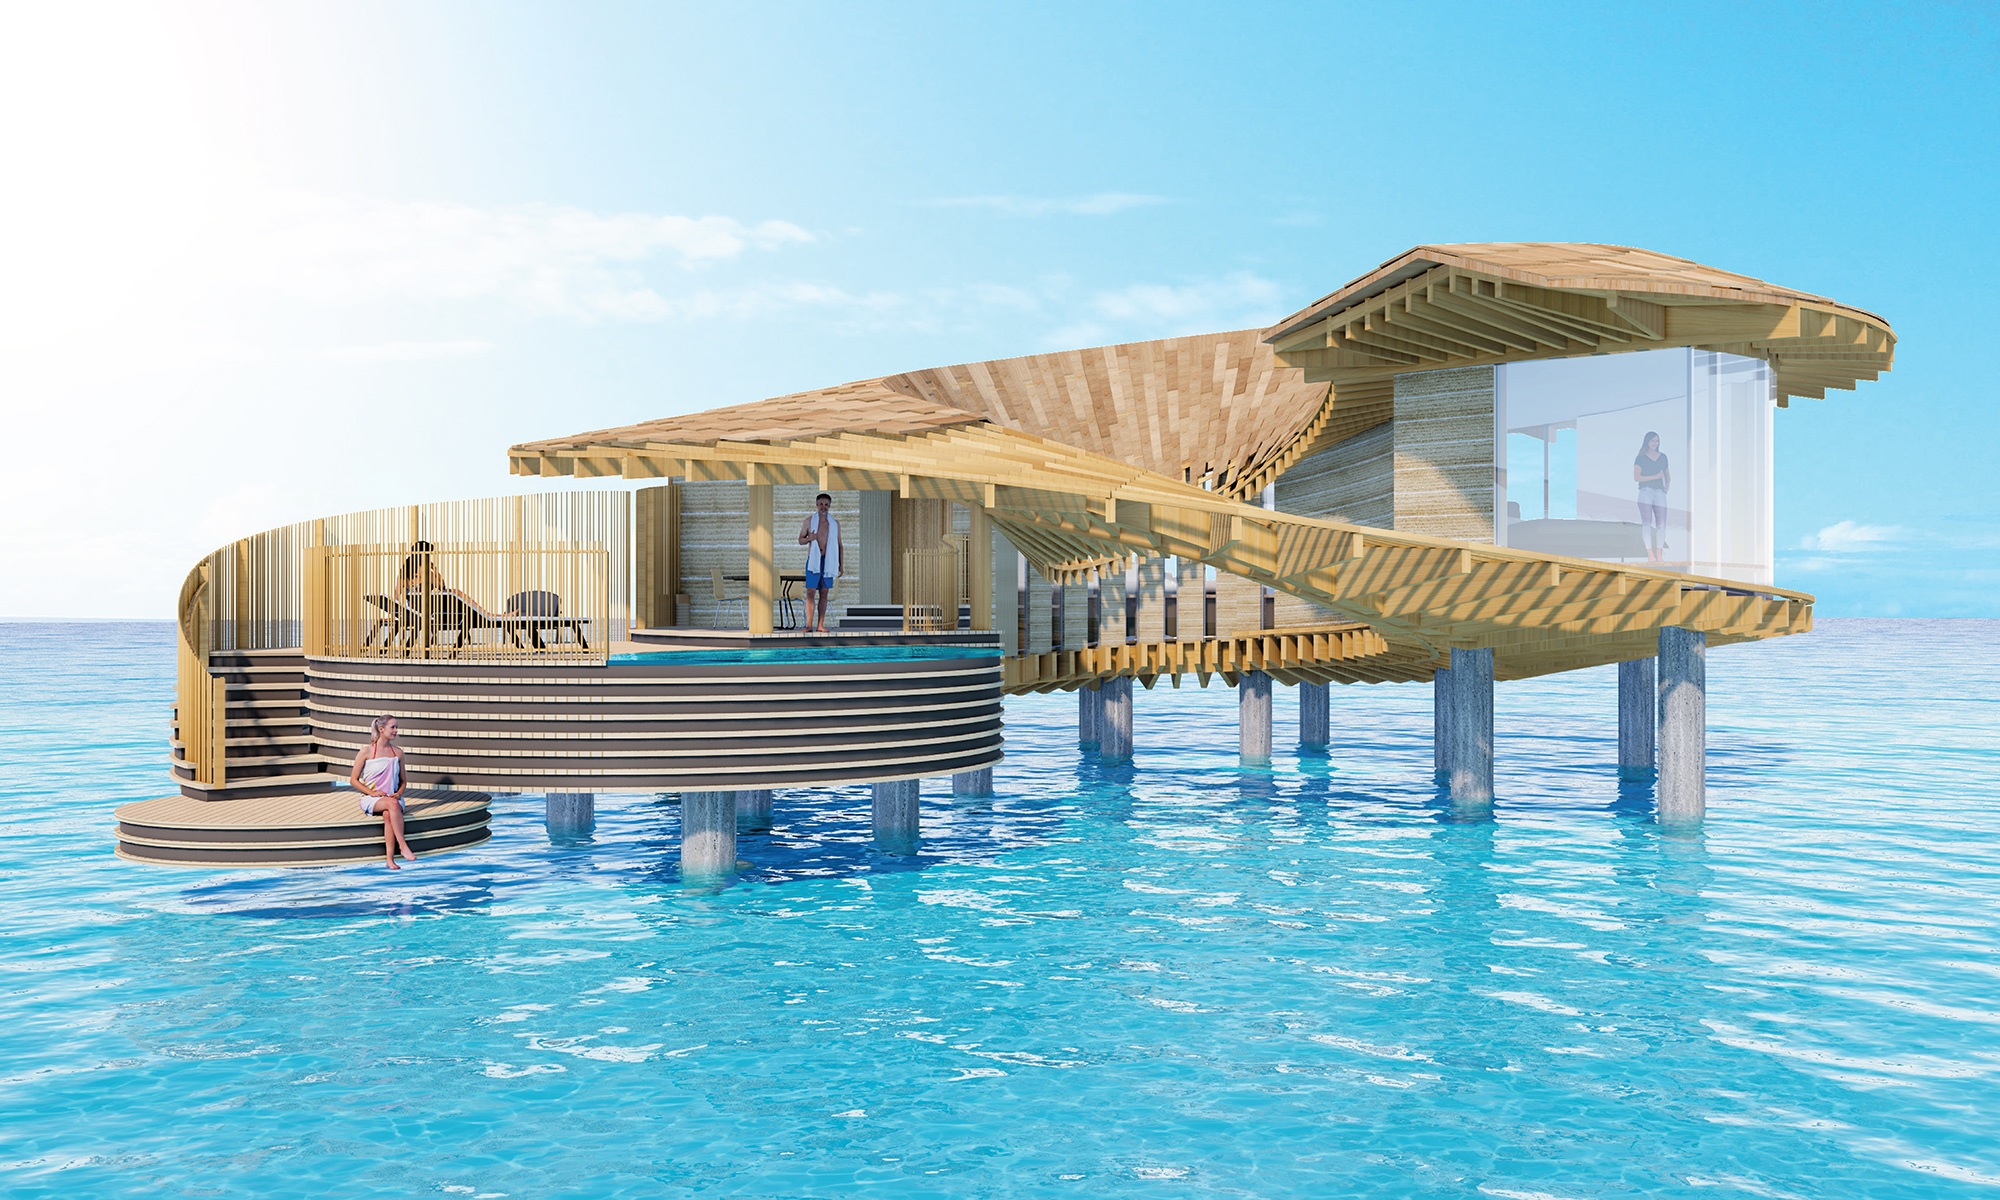 Coral Villa des Hotelkomplexes Ummahat Al Shayk Island Resort im Roten Meer, entworfen vom japanischen Architekten Kengo Kuma